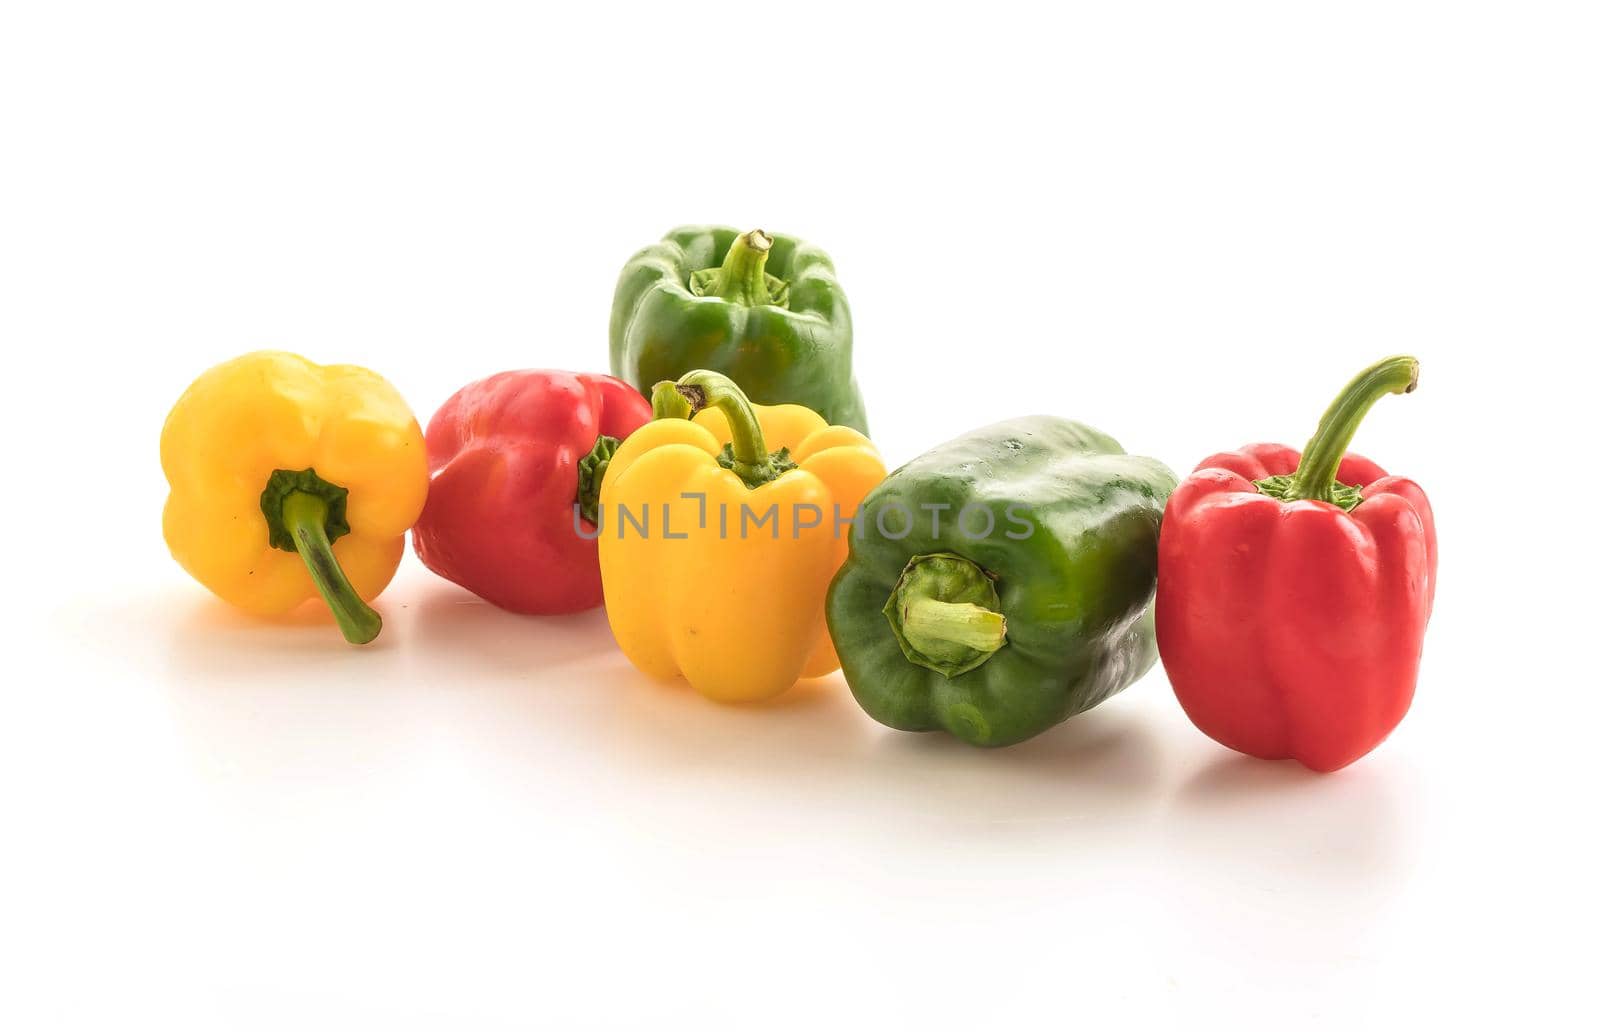 Bell pepper on white background